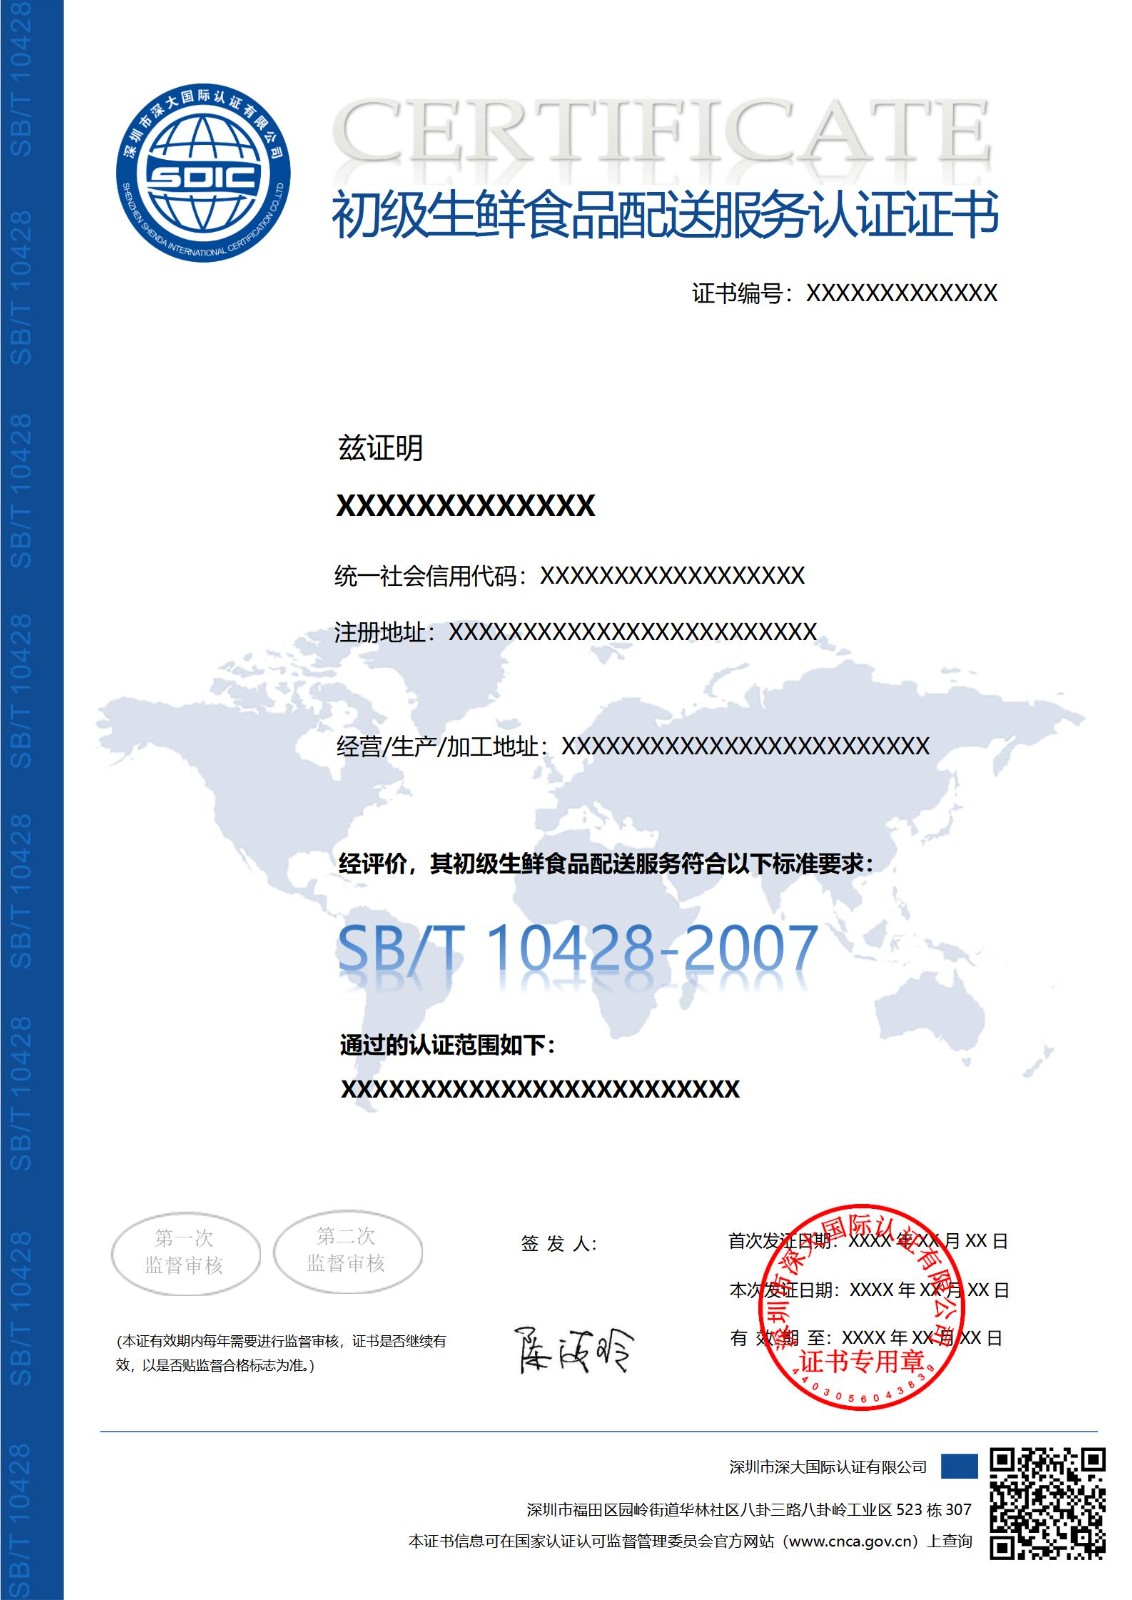 SB/T 10428初级生鲜食品配送服务认证证书